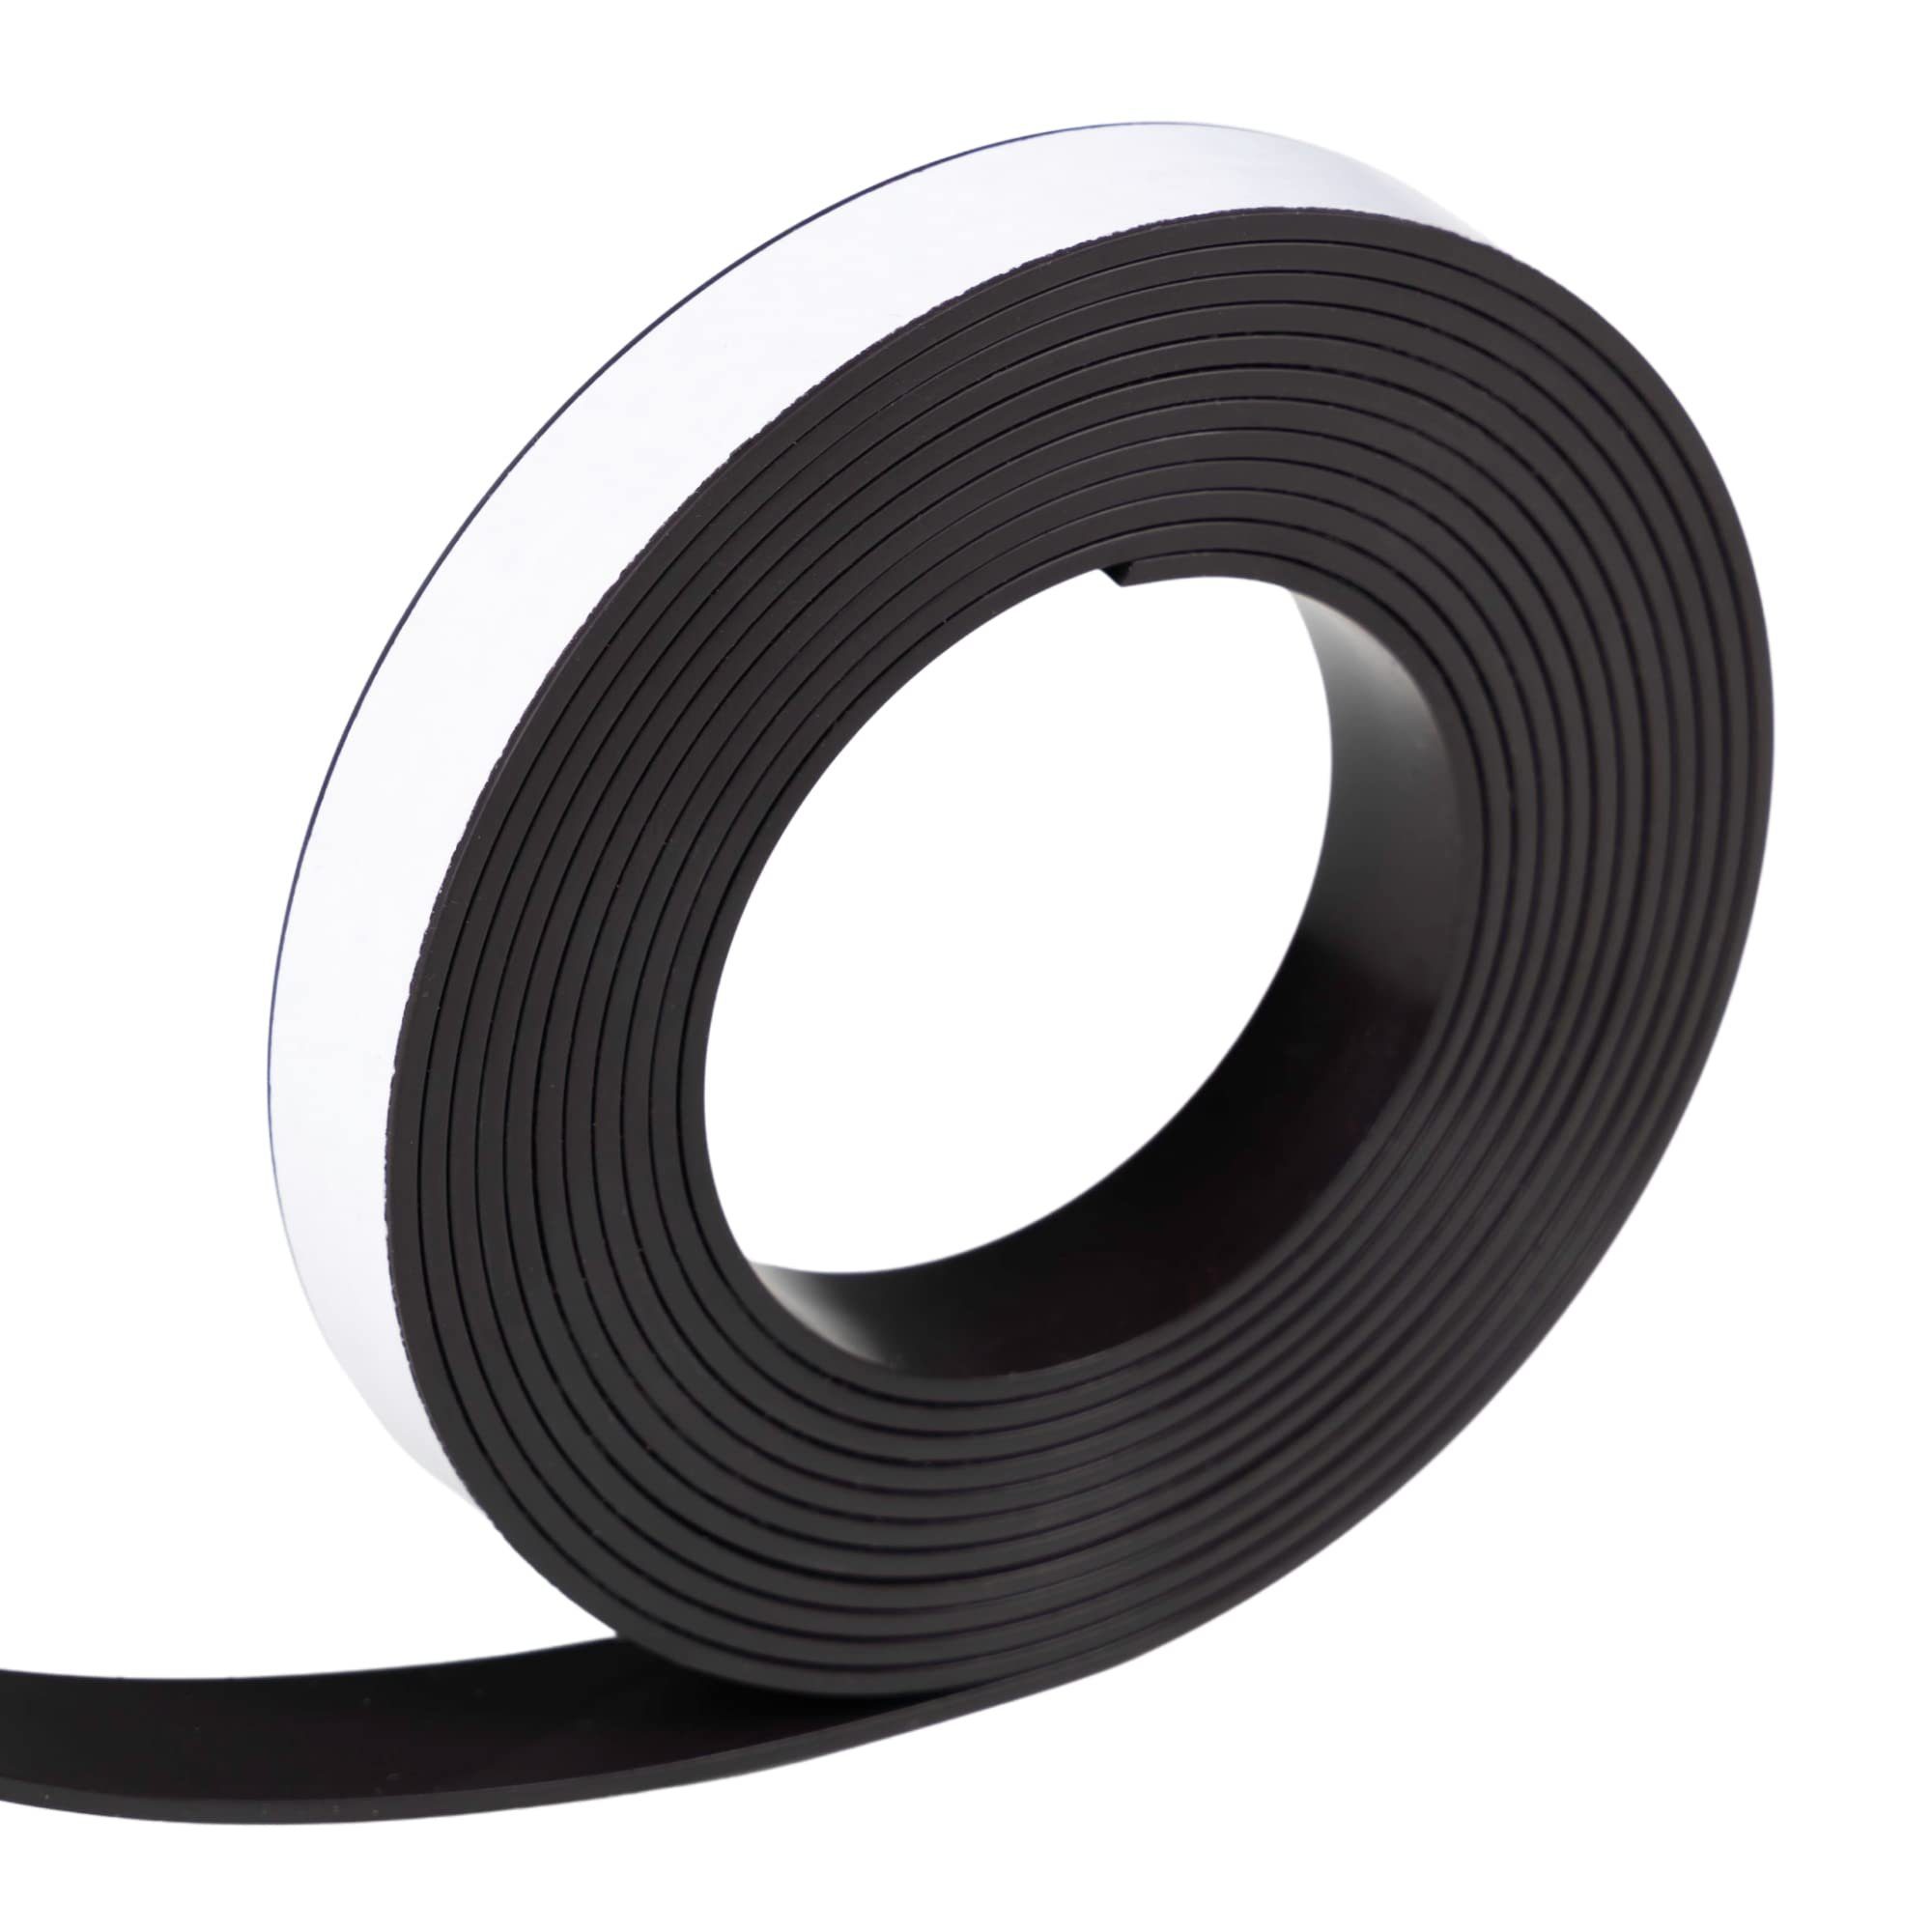 WINTEX Klebeband Magnetstreifen 3m x 15 x 1,8mm mit Selbstklebefunktion Magnetband 3m x 15 x 1,8mm Selbstklebend